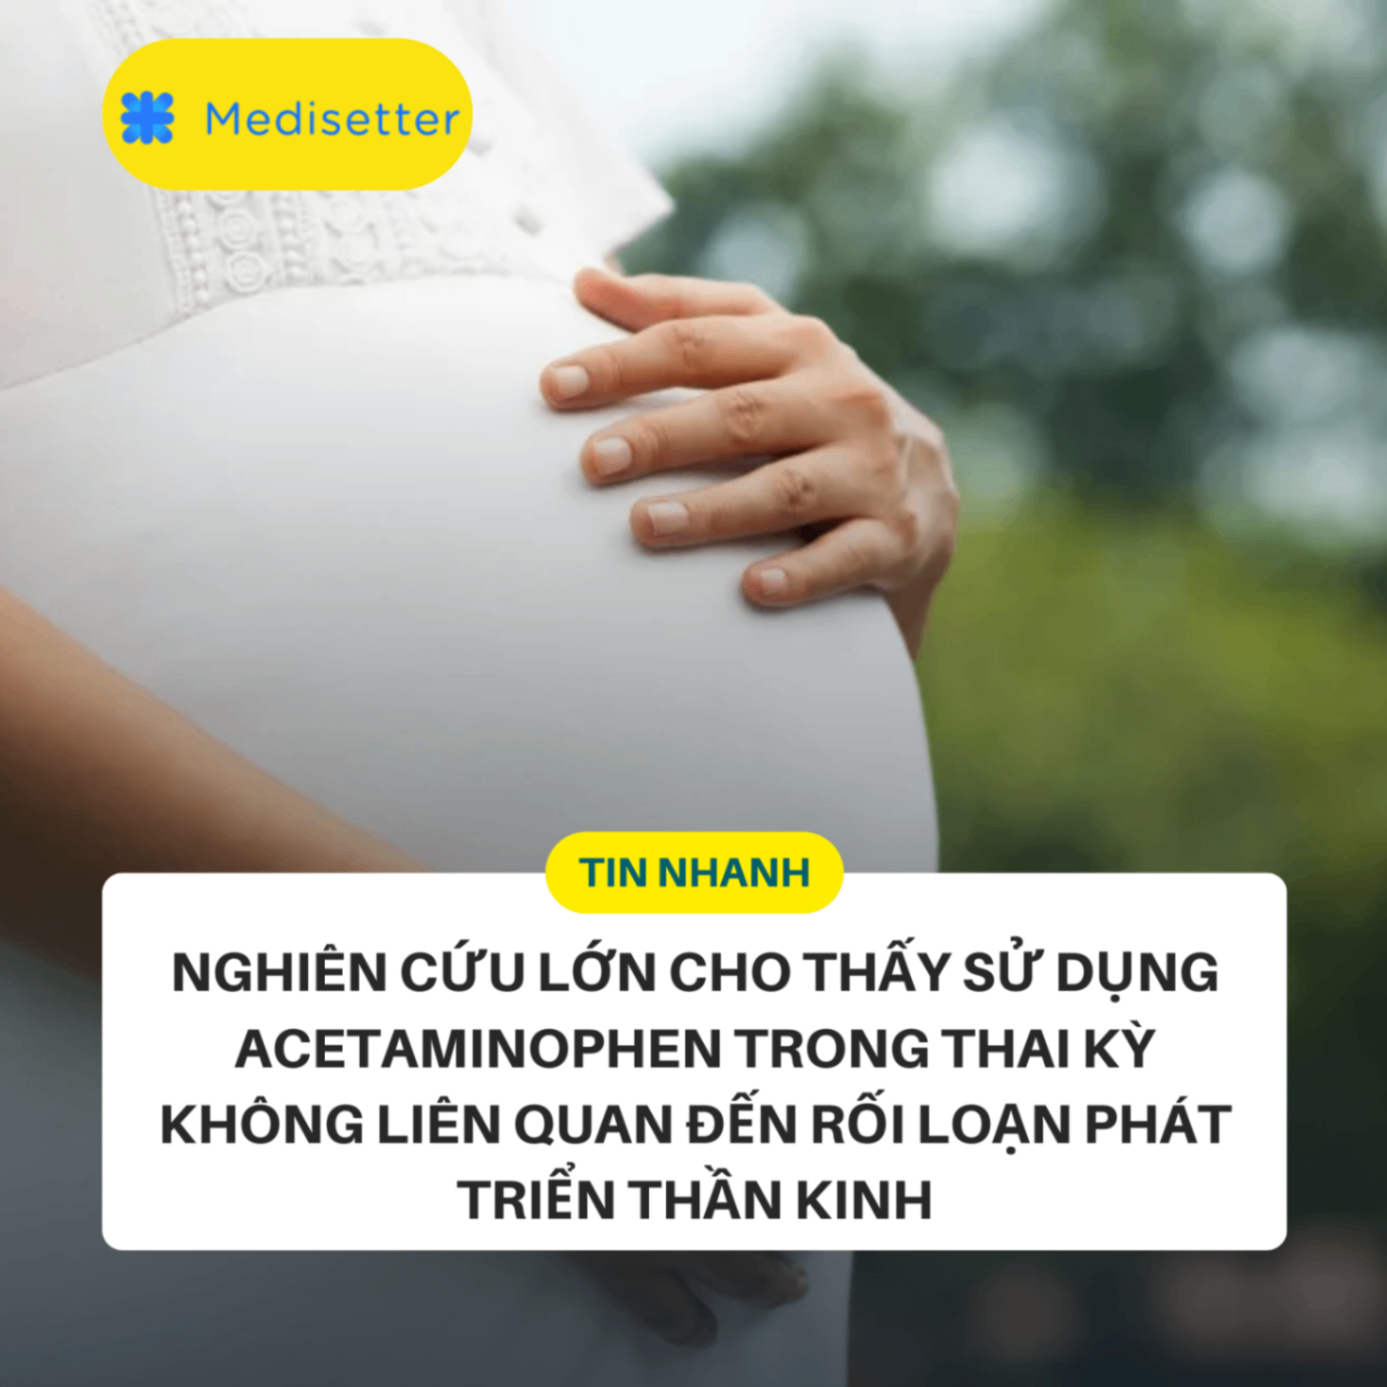 Nghiên cứu lớn cho thấy sử dụng Acetaminophen trong thai kỳ không liên quan đến rối loạn phát triển thần kinh